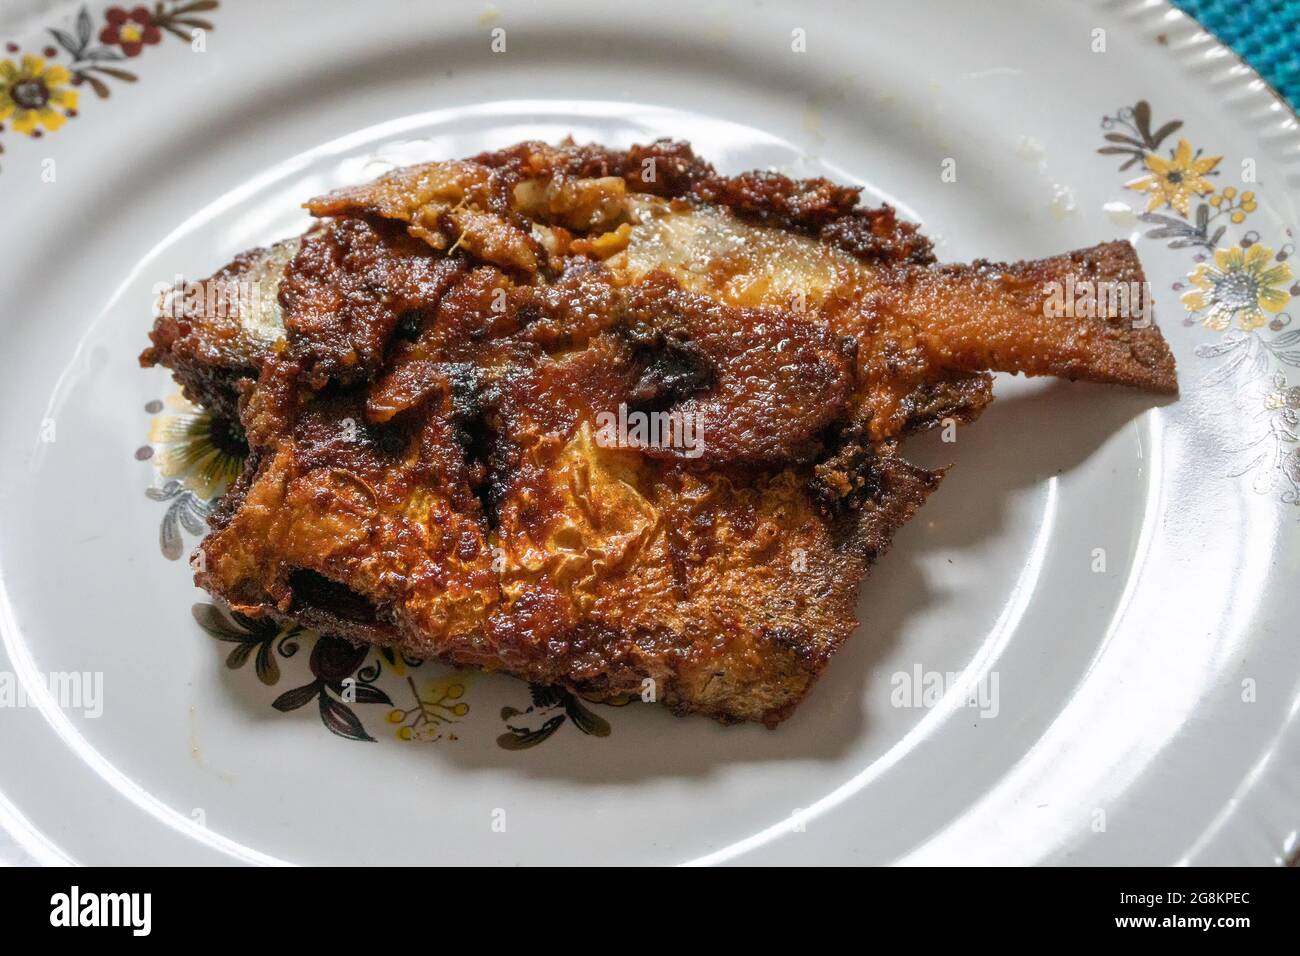 Un pesce fritto di pomodoro servito su un piatto decorato bianco, speziato cibo indiano. I Pomfrets sono pesci perciformi appartenenti alla famiglia Bramidae. Foto Stock